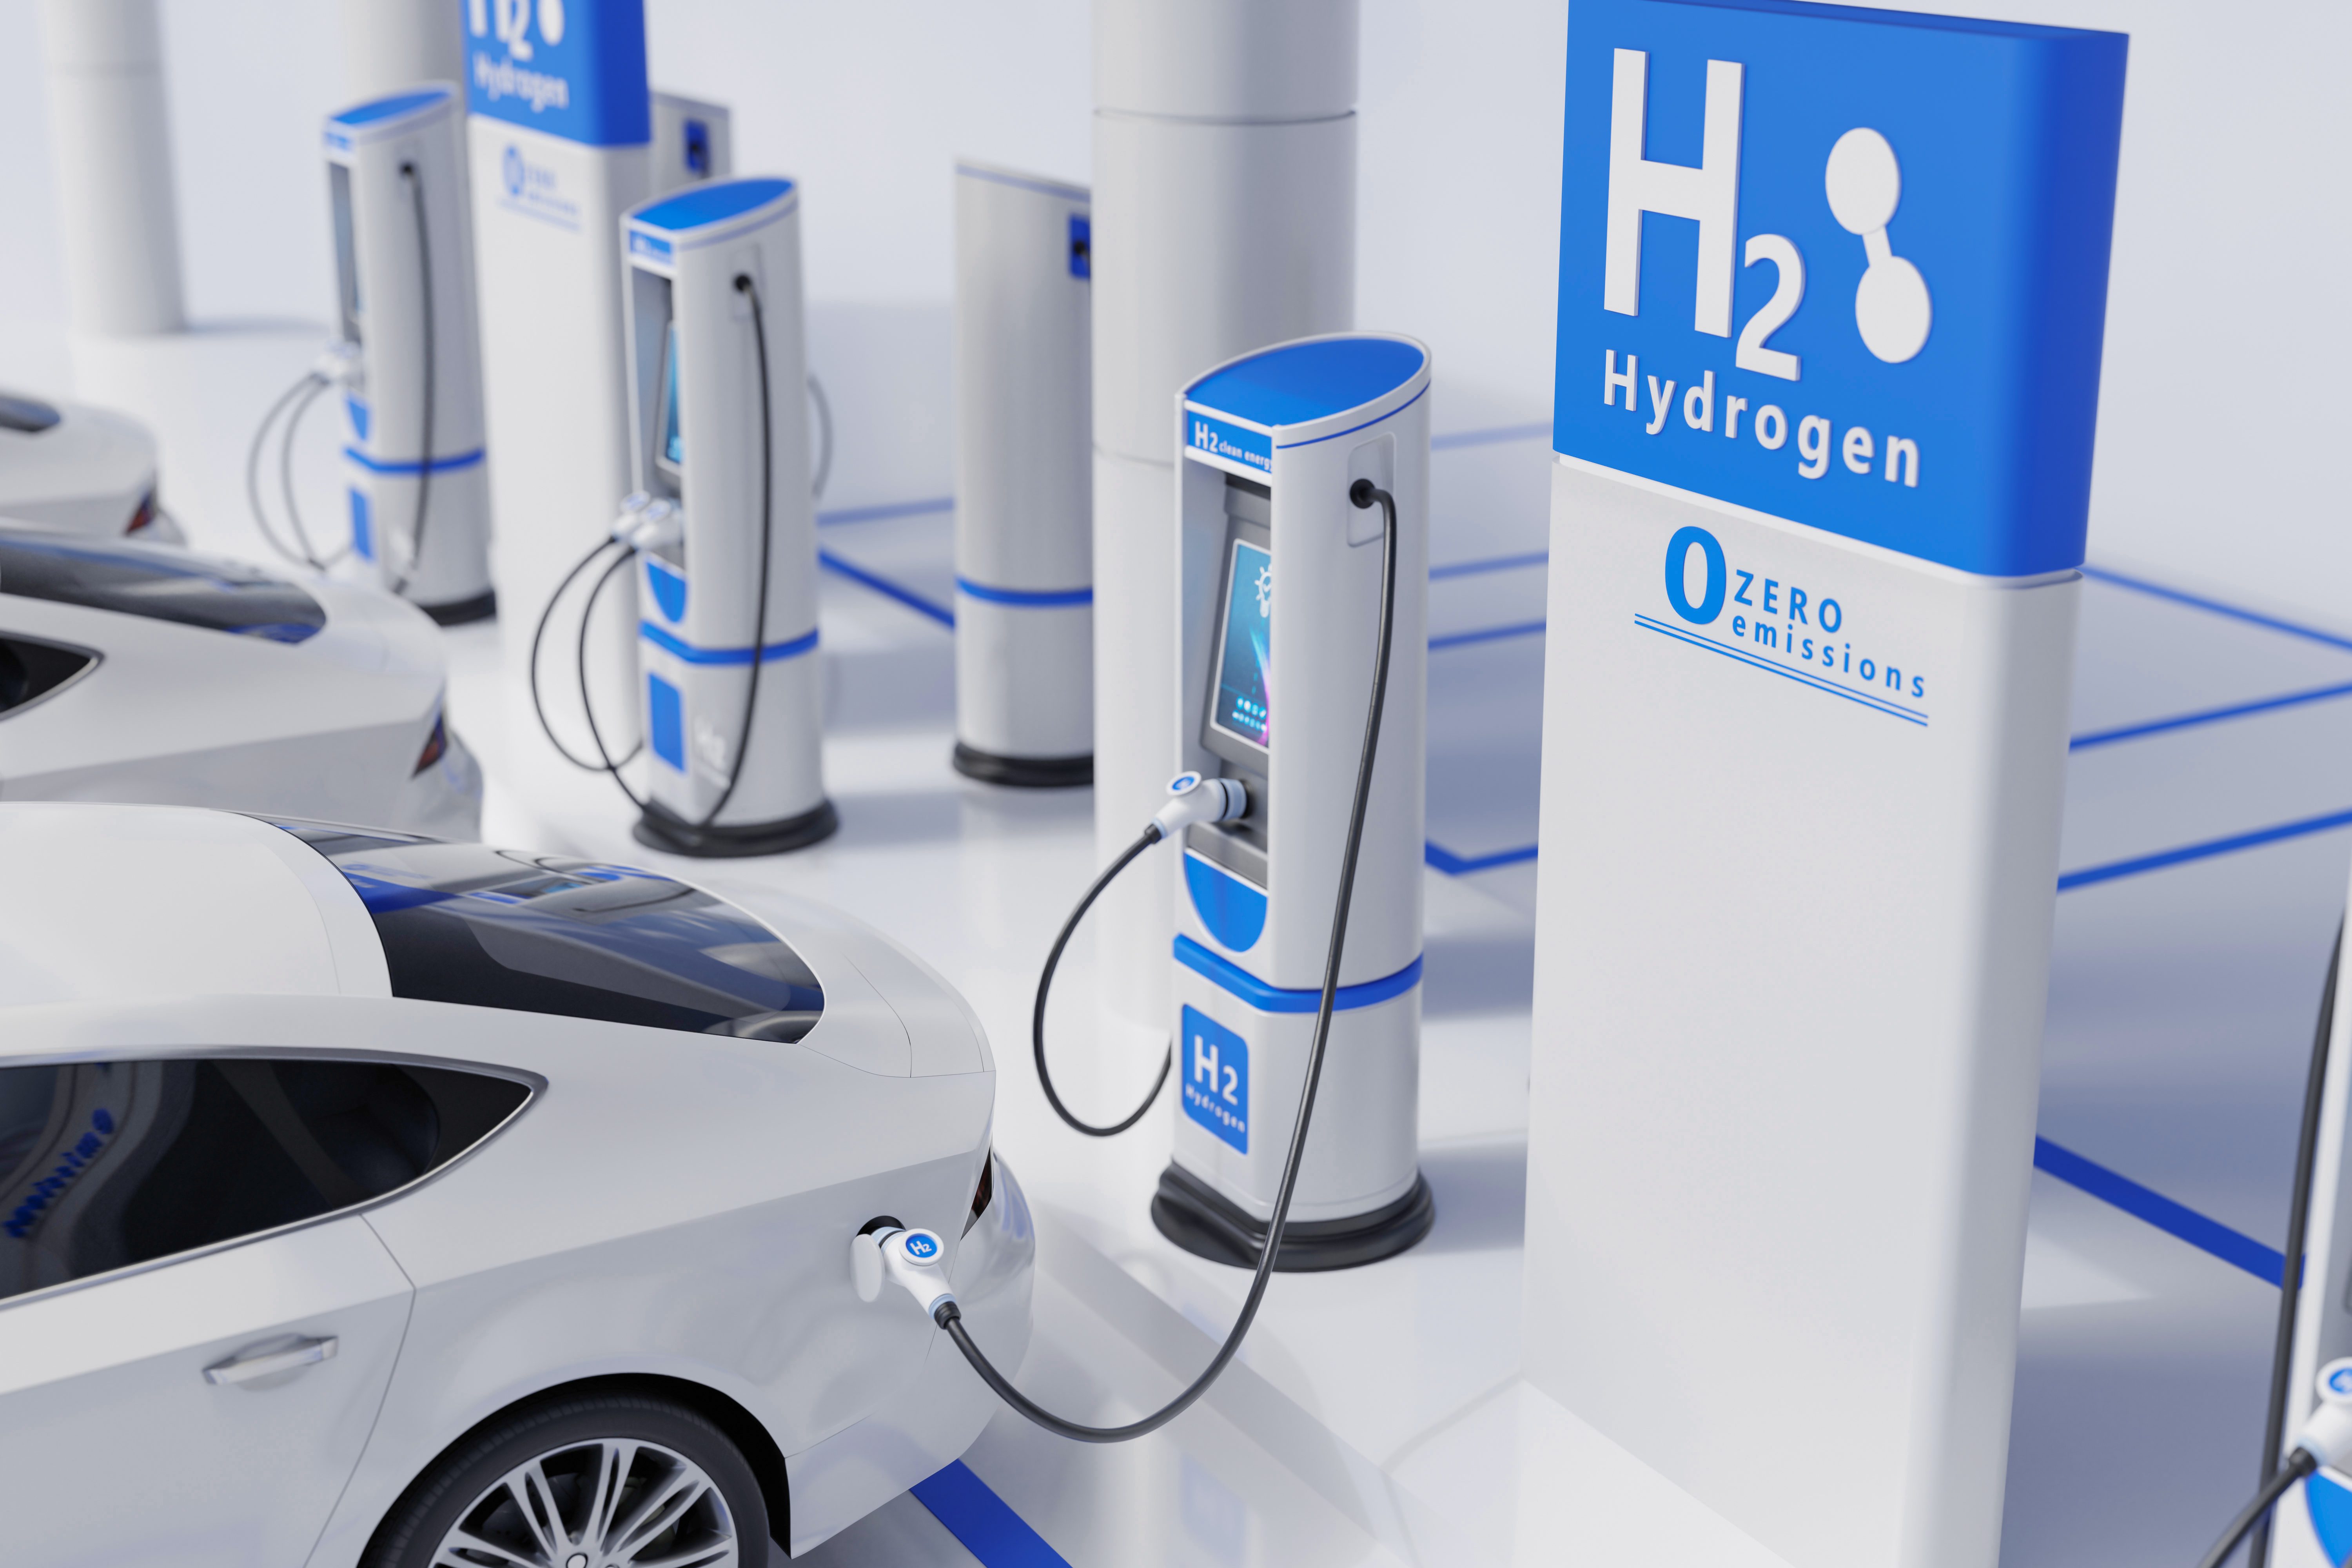 Teknologi Hidrogen Sebagai Potensi Pengganti Bensin di Industri Otomotif